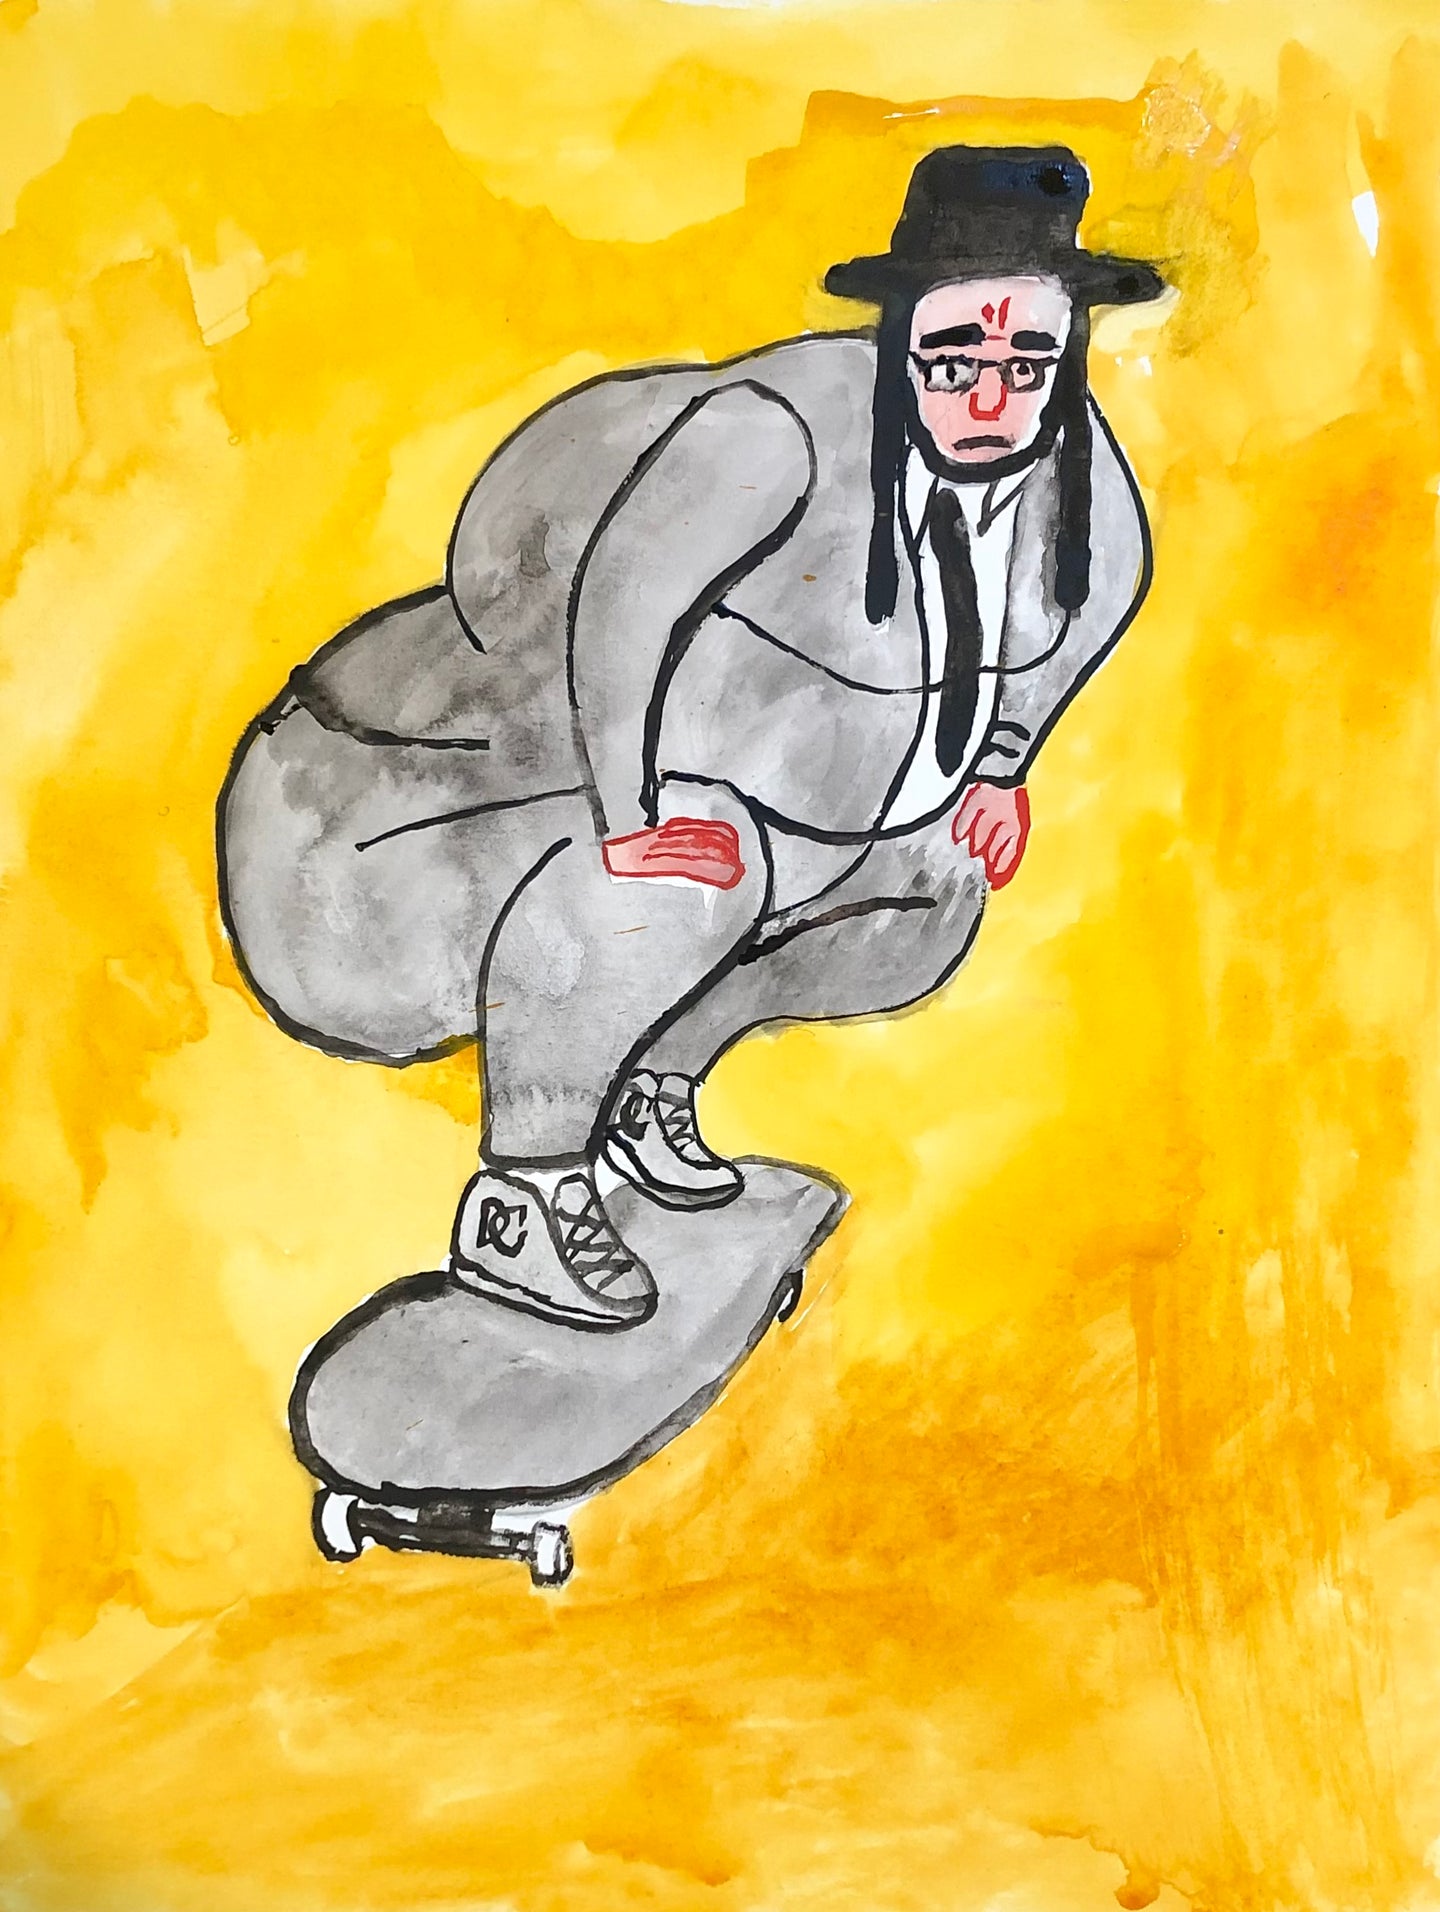 Heavyset Hasidic Man on Skateboard